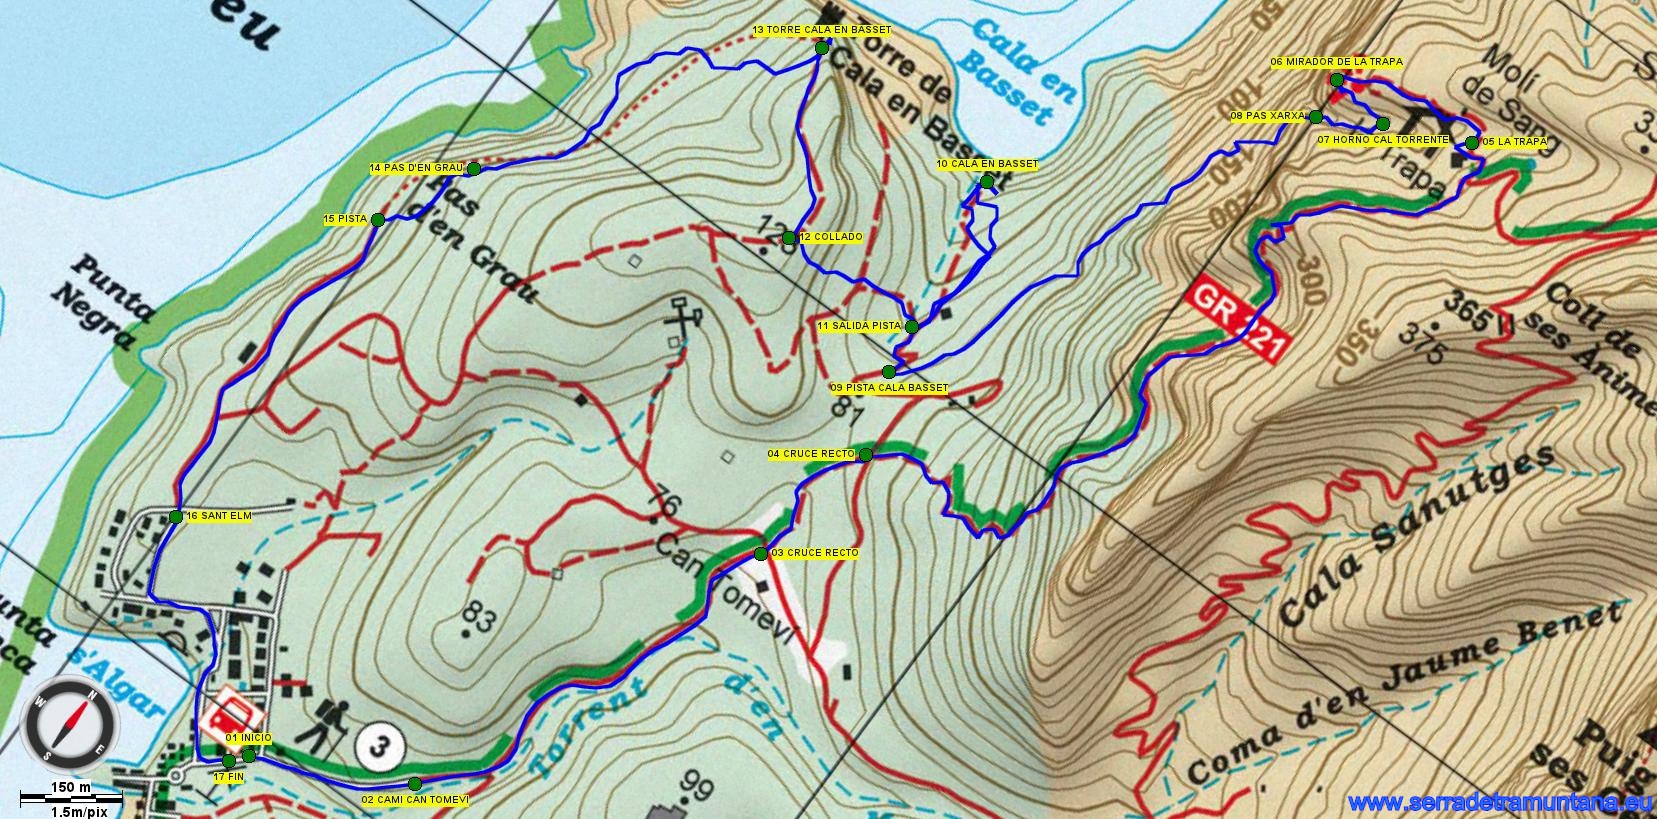 Recorte del Mapa Alpina con el trazado de la ruta y los puntos de referencia más importantes